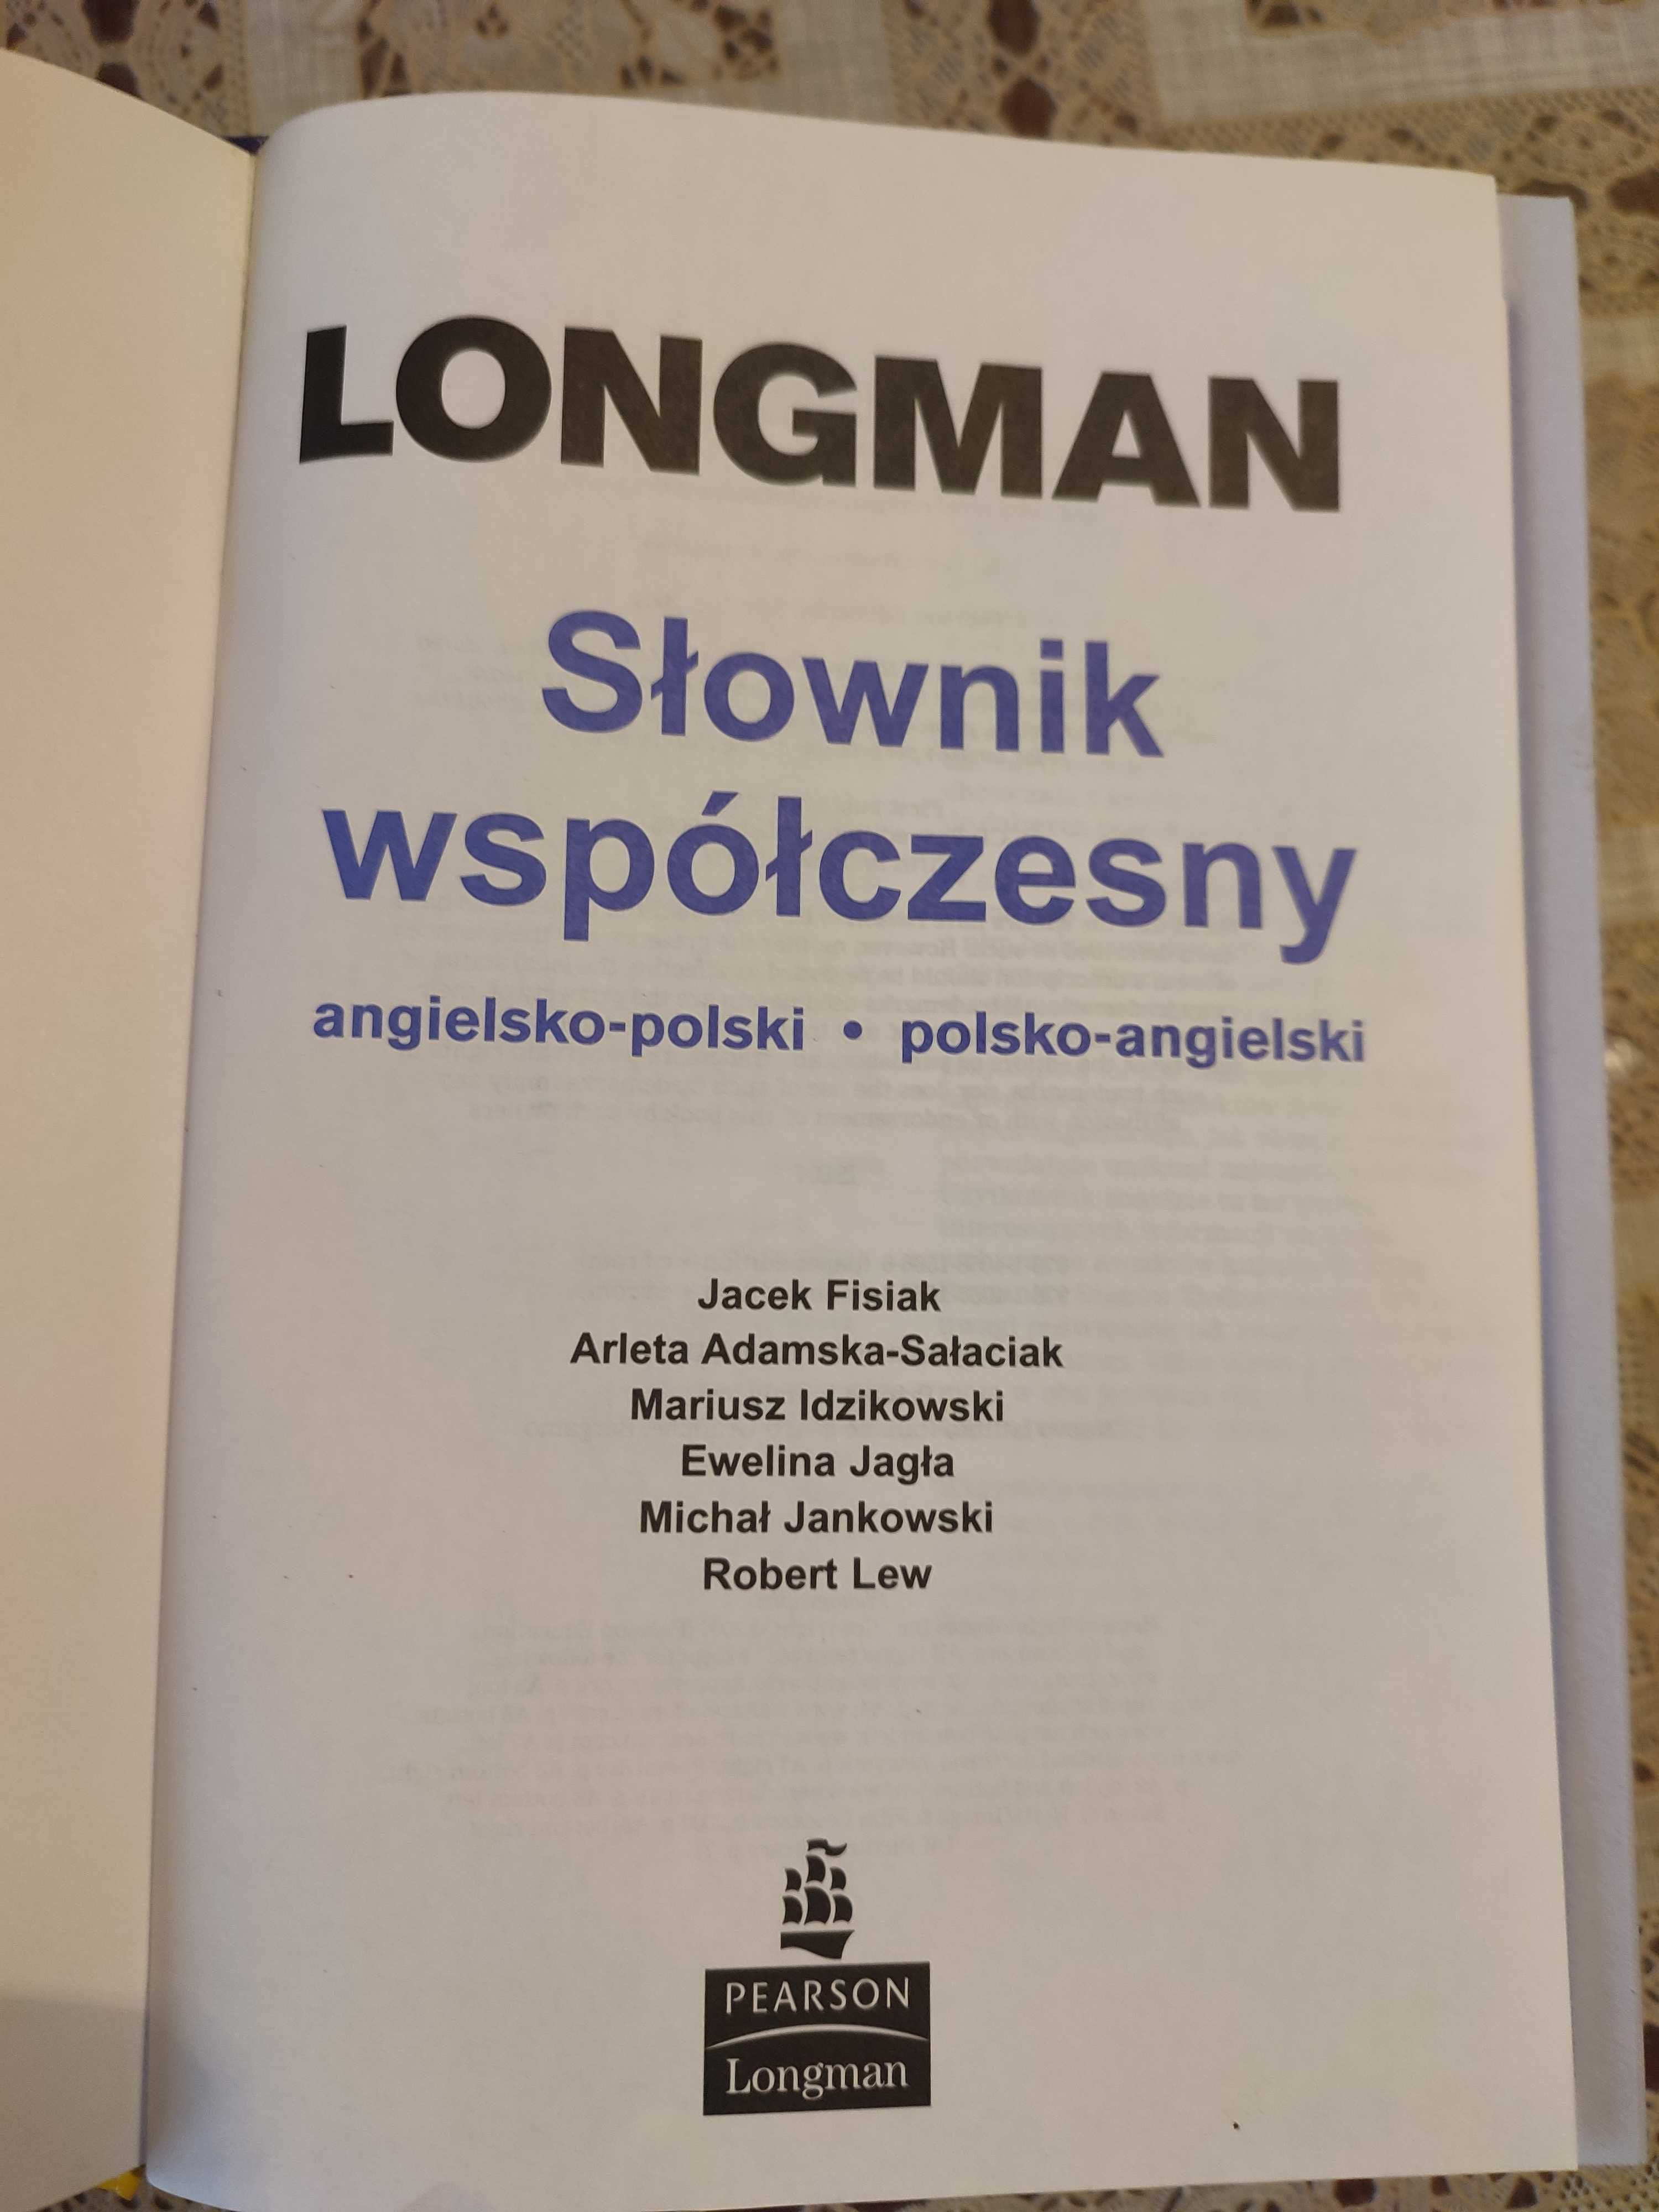 Słownik Longman angielsko polski / polsko angielski.